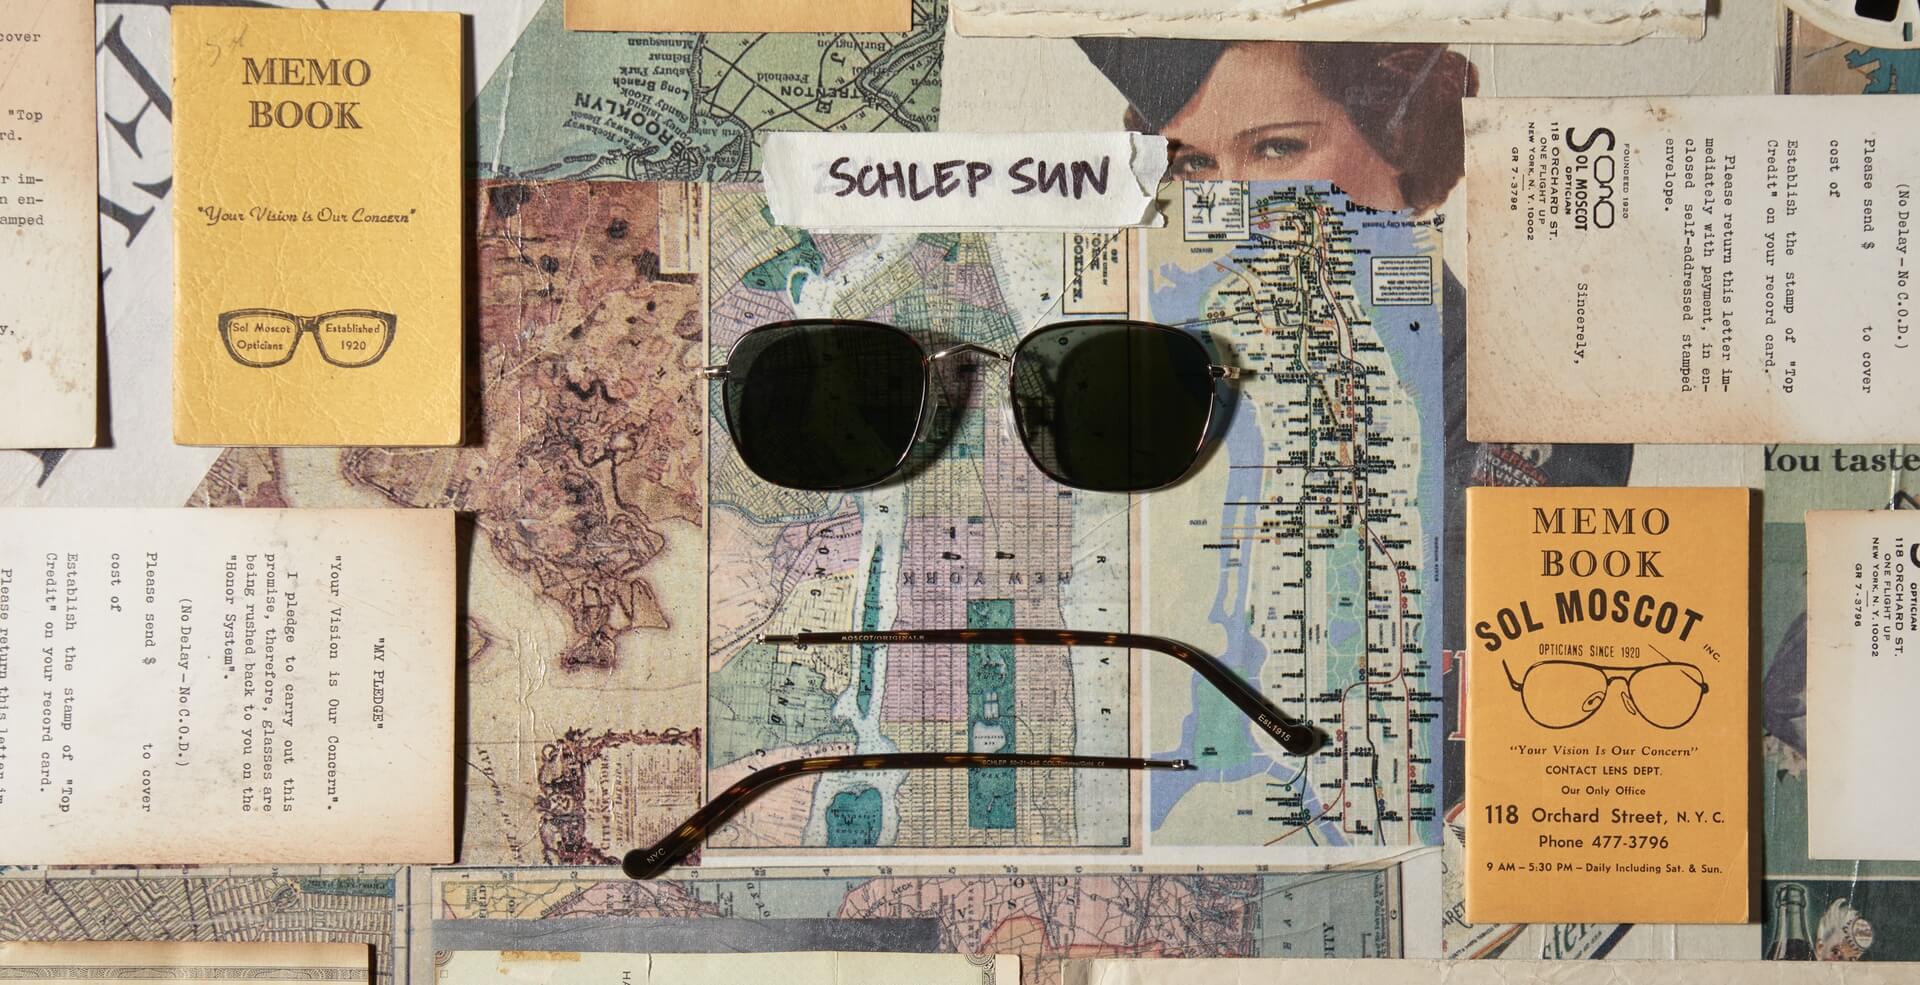 The SCHLEP SUN